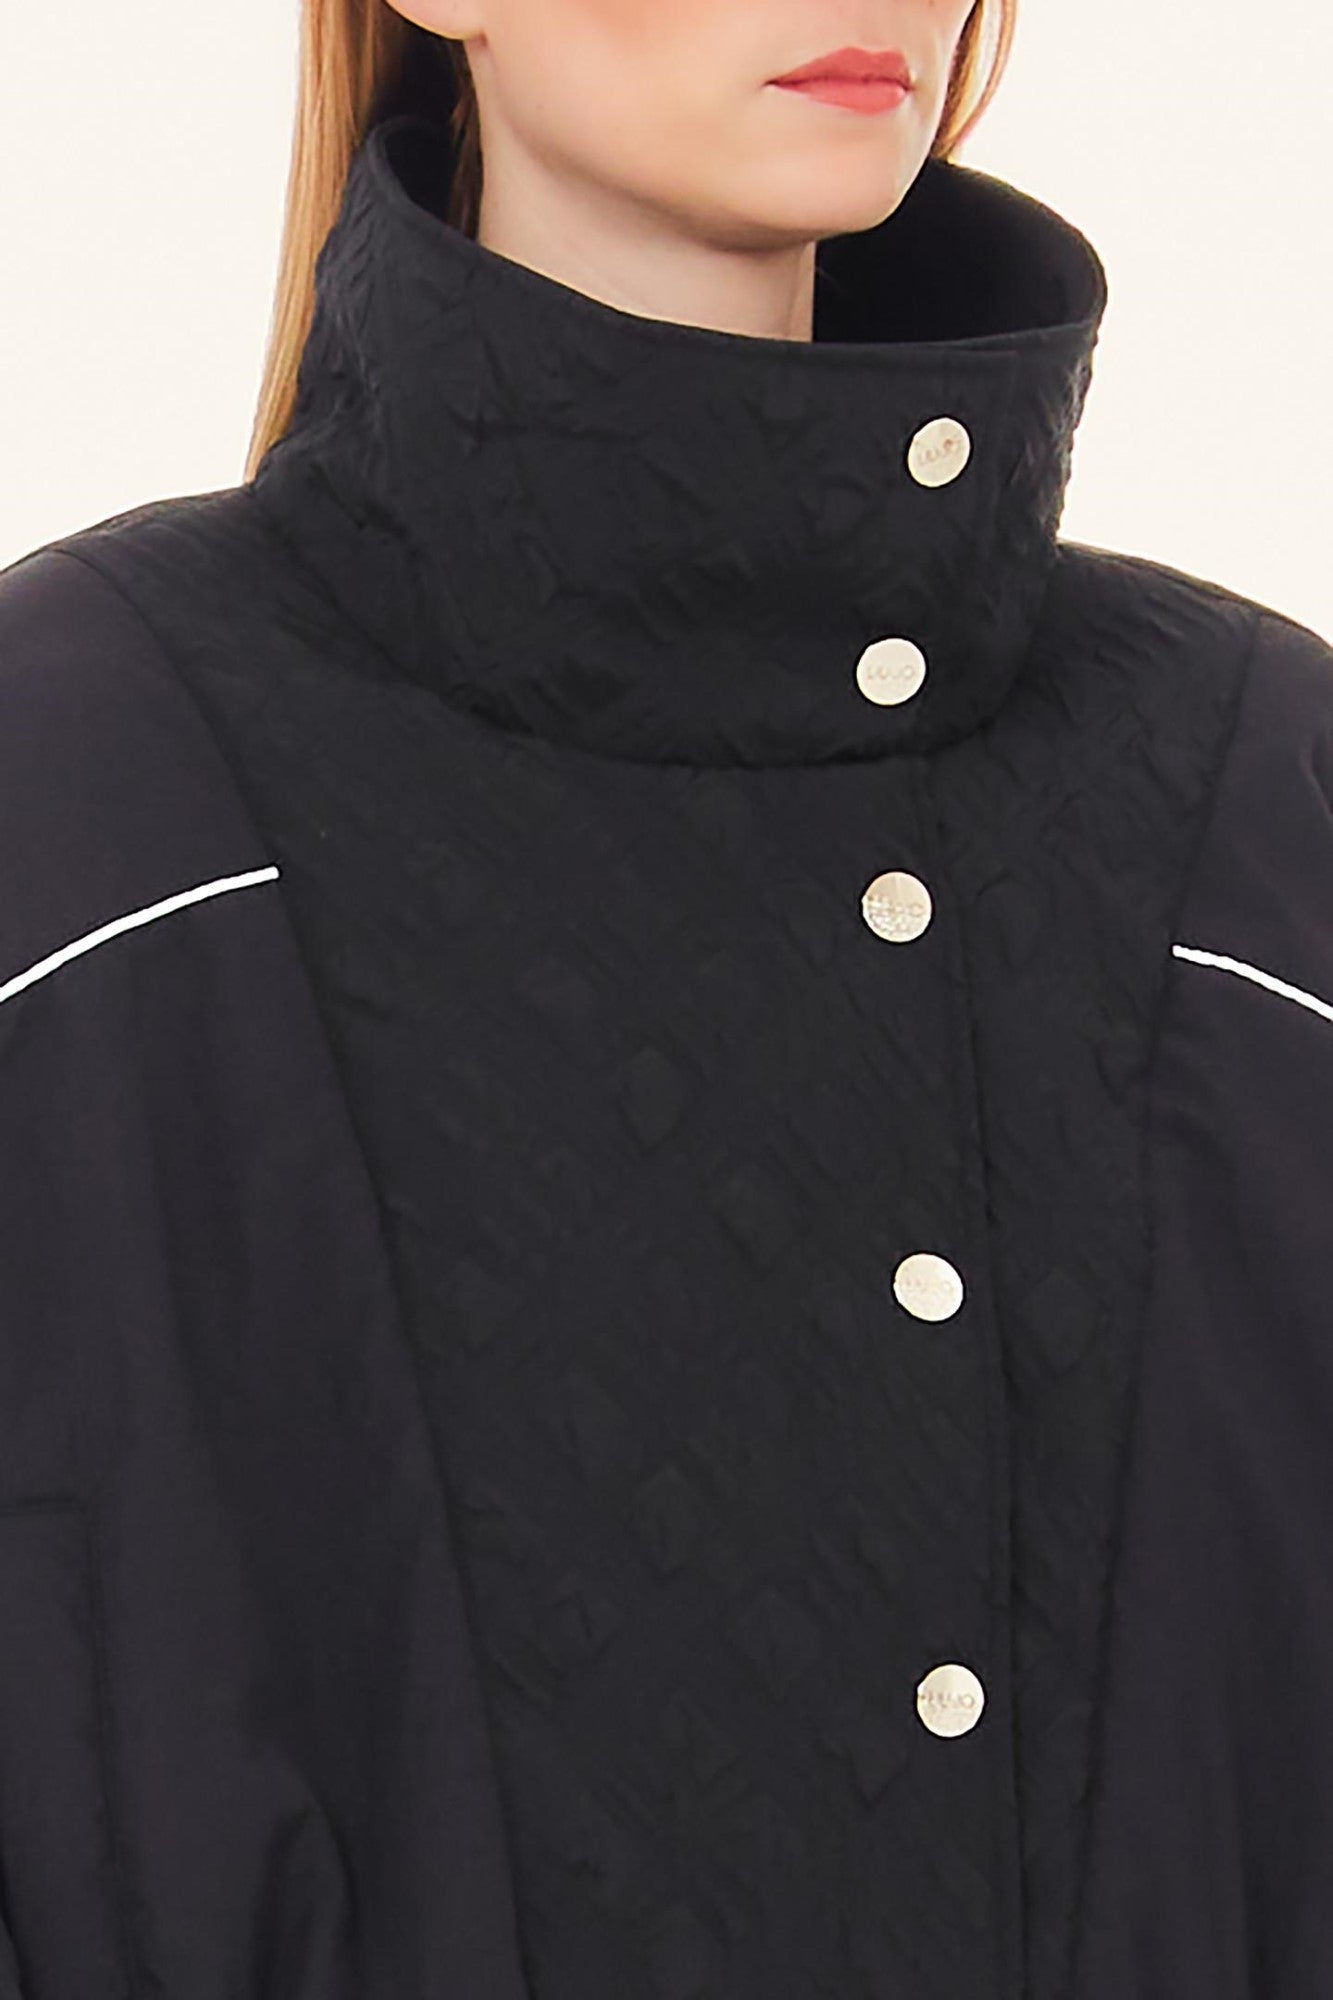 Jacheta LIU JO cu logo în relief guler înalt talie elastica si închidere cu capse IMBRACAMINTE LIU JO   